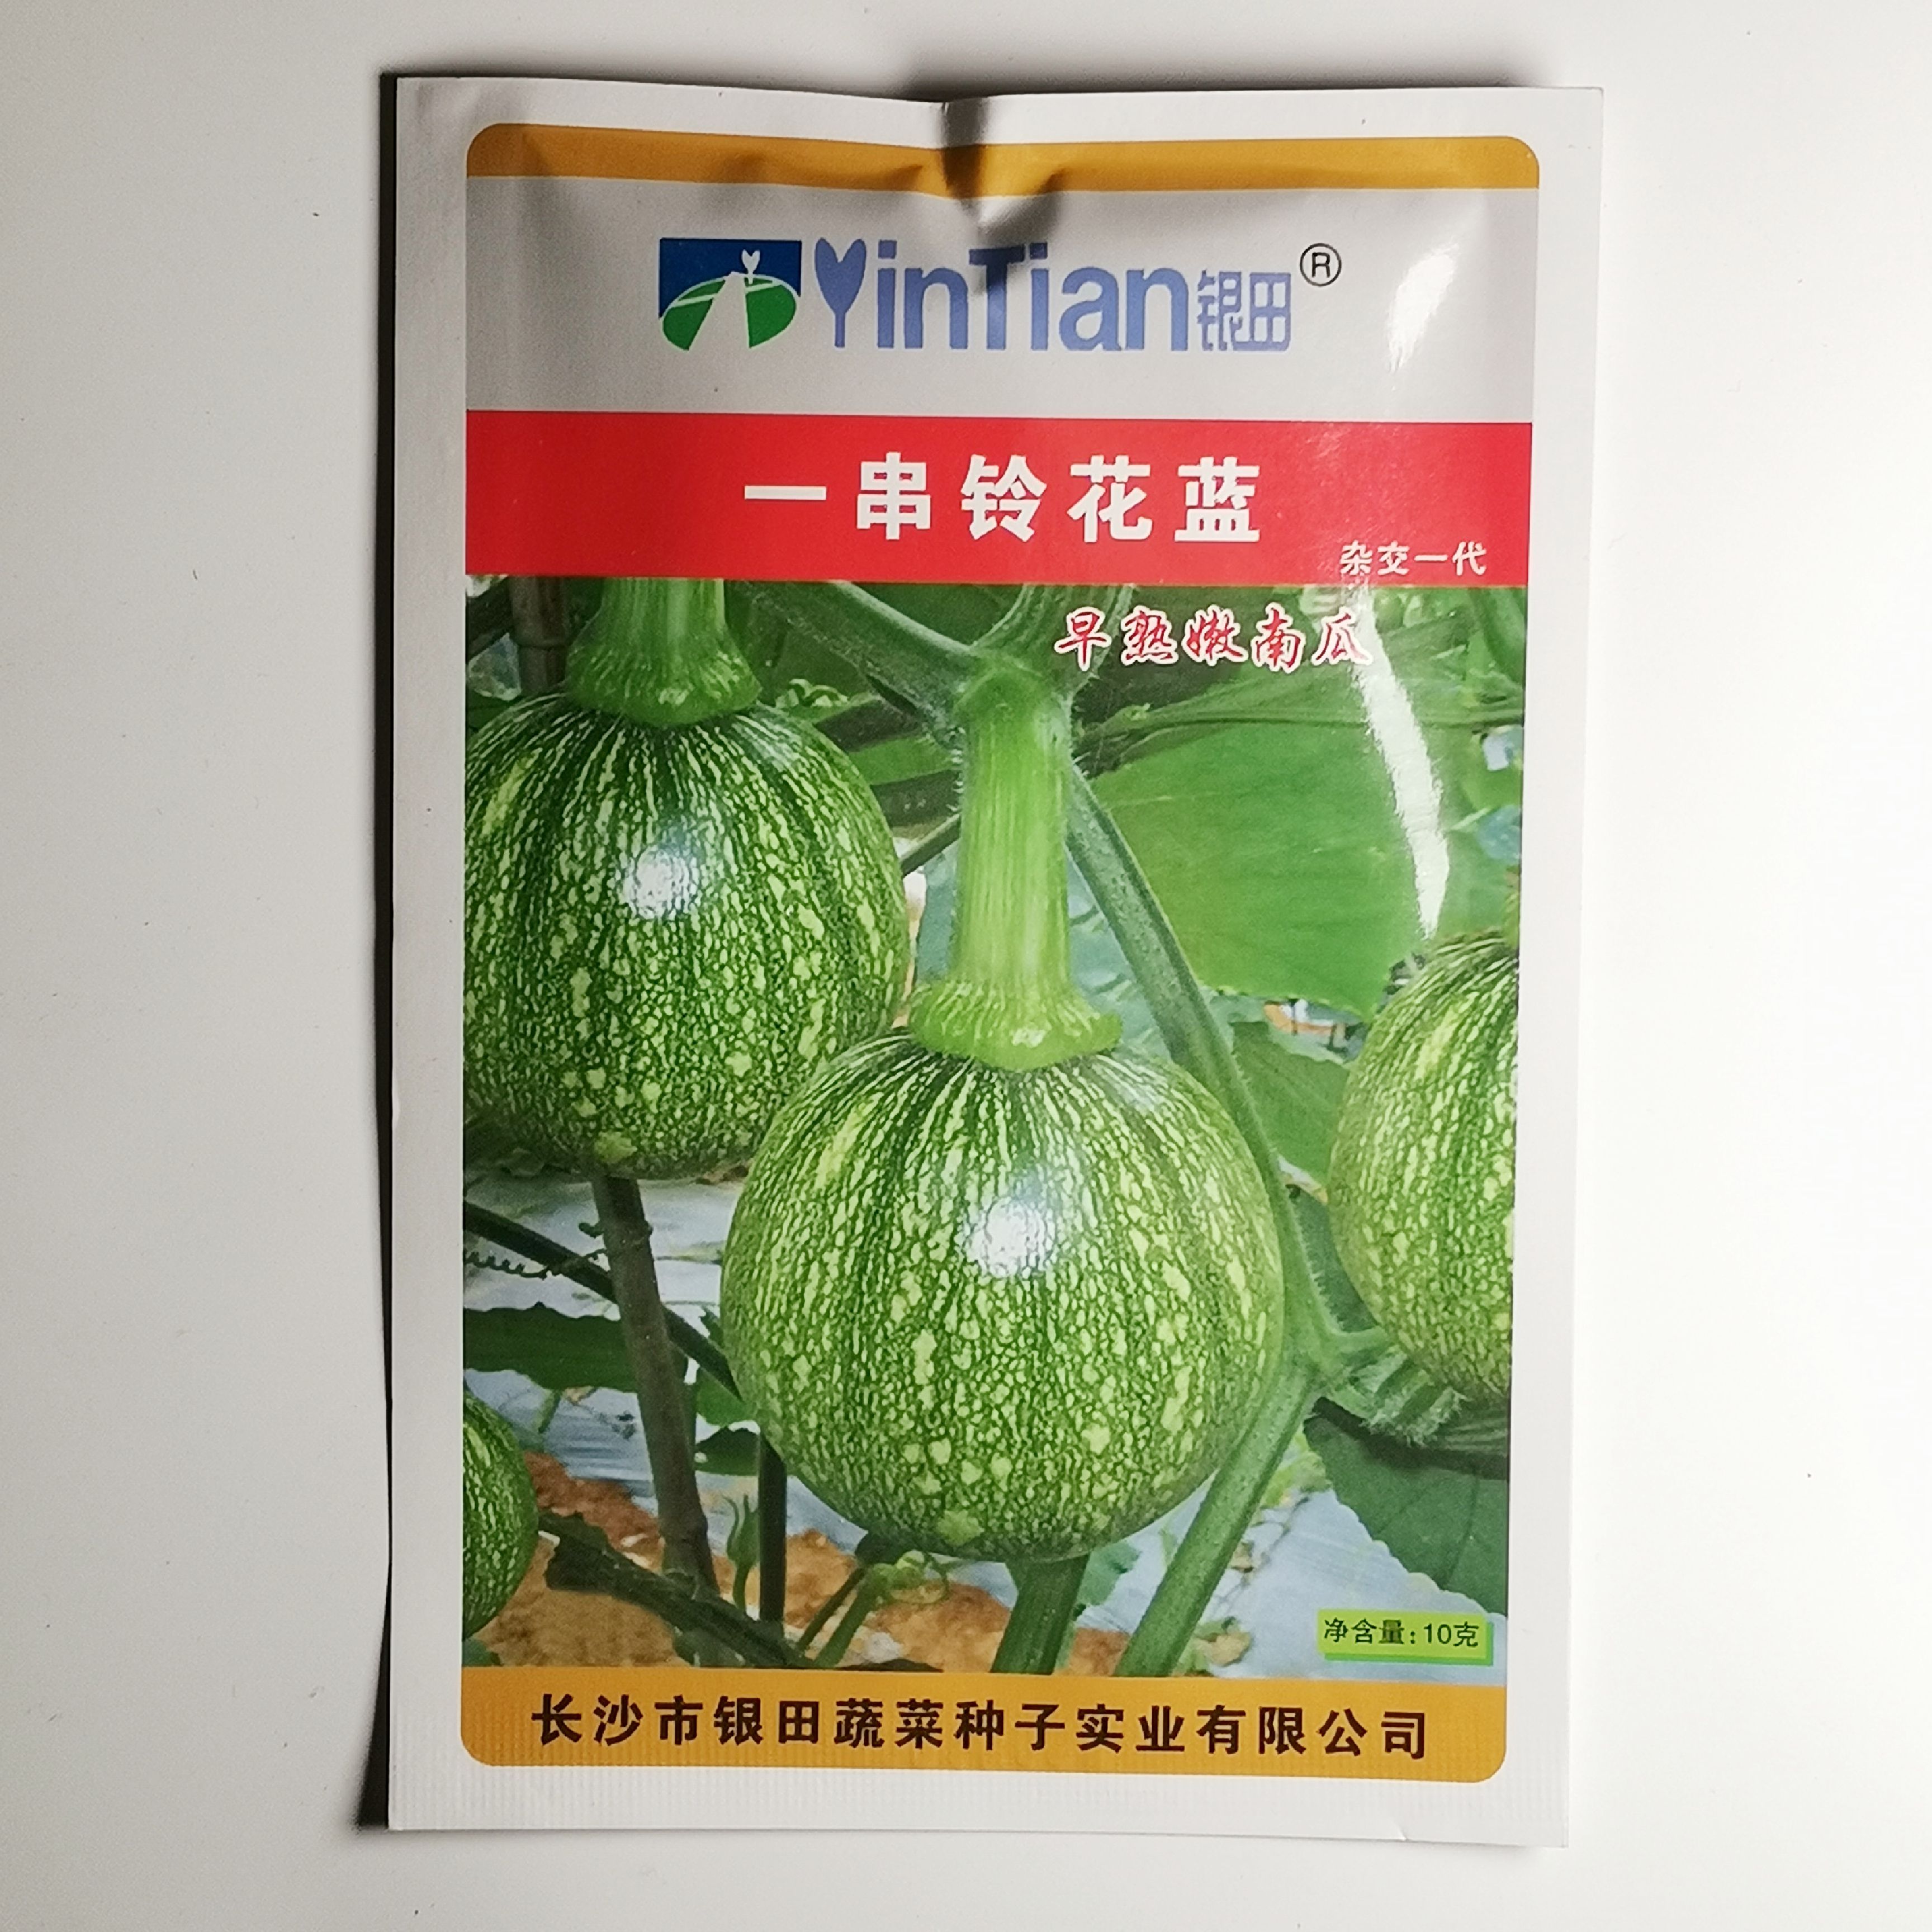 沭阳县迷你南瓜种子 一串铃南瓜种绿板栗菜用小南瓜种子早熟杂交大田种